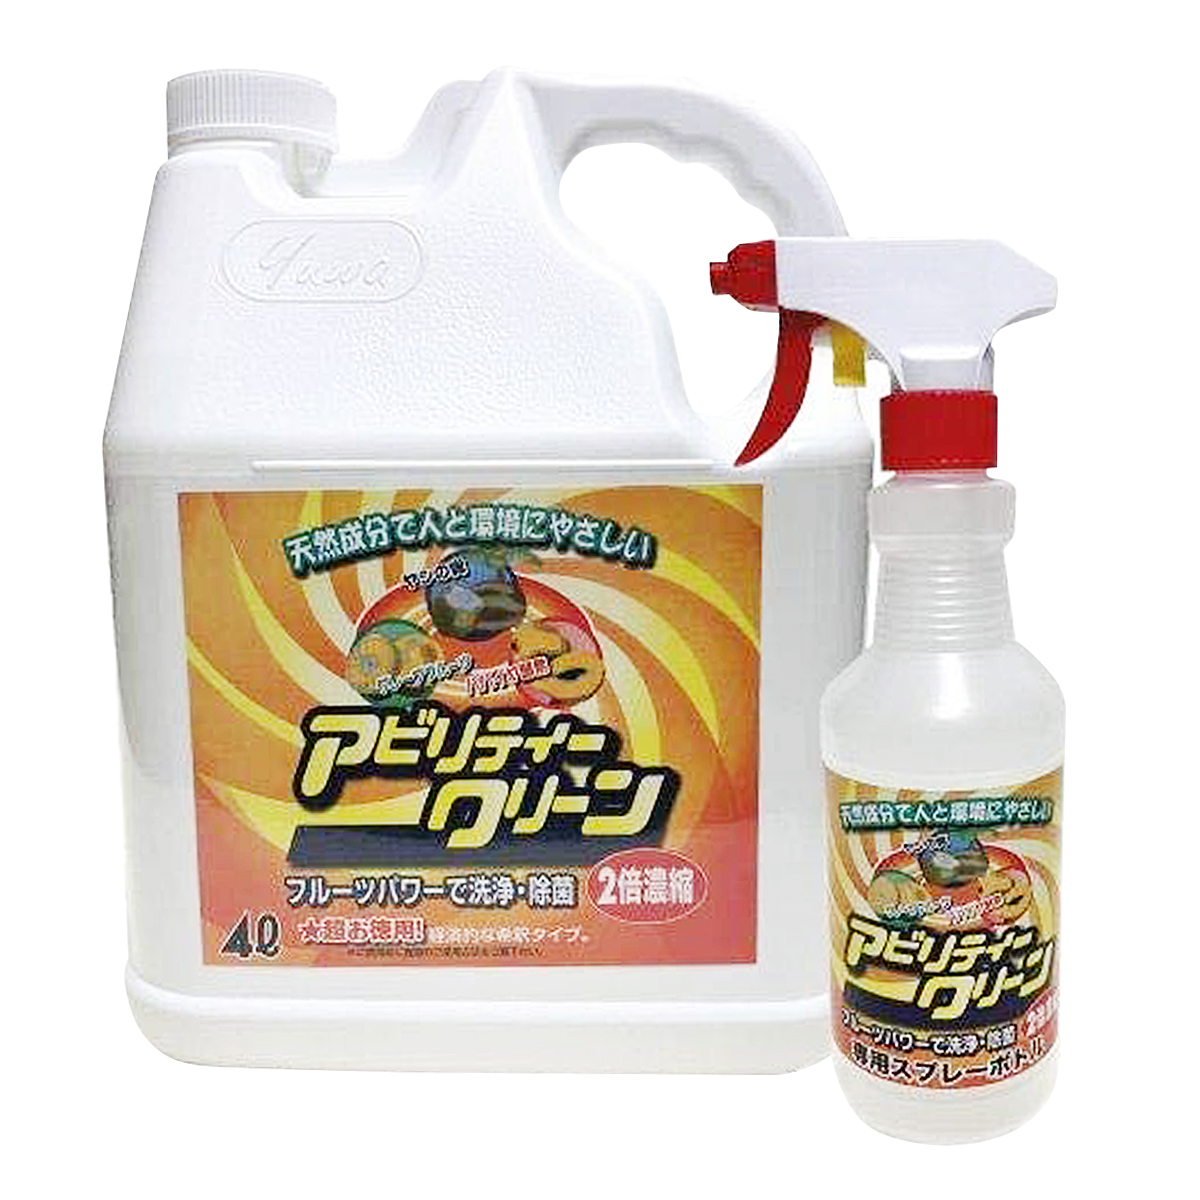 カネヨ石鹸 ホール用洗剤ピュアメイト4.5kg 室内用 掃除用洗剤 洗剤